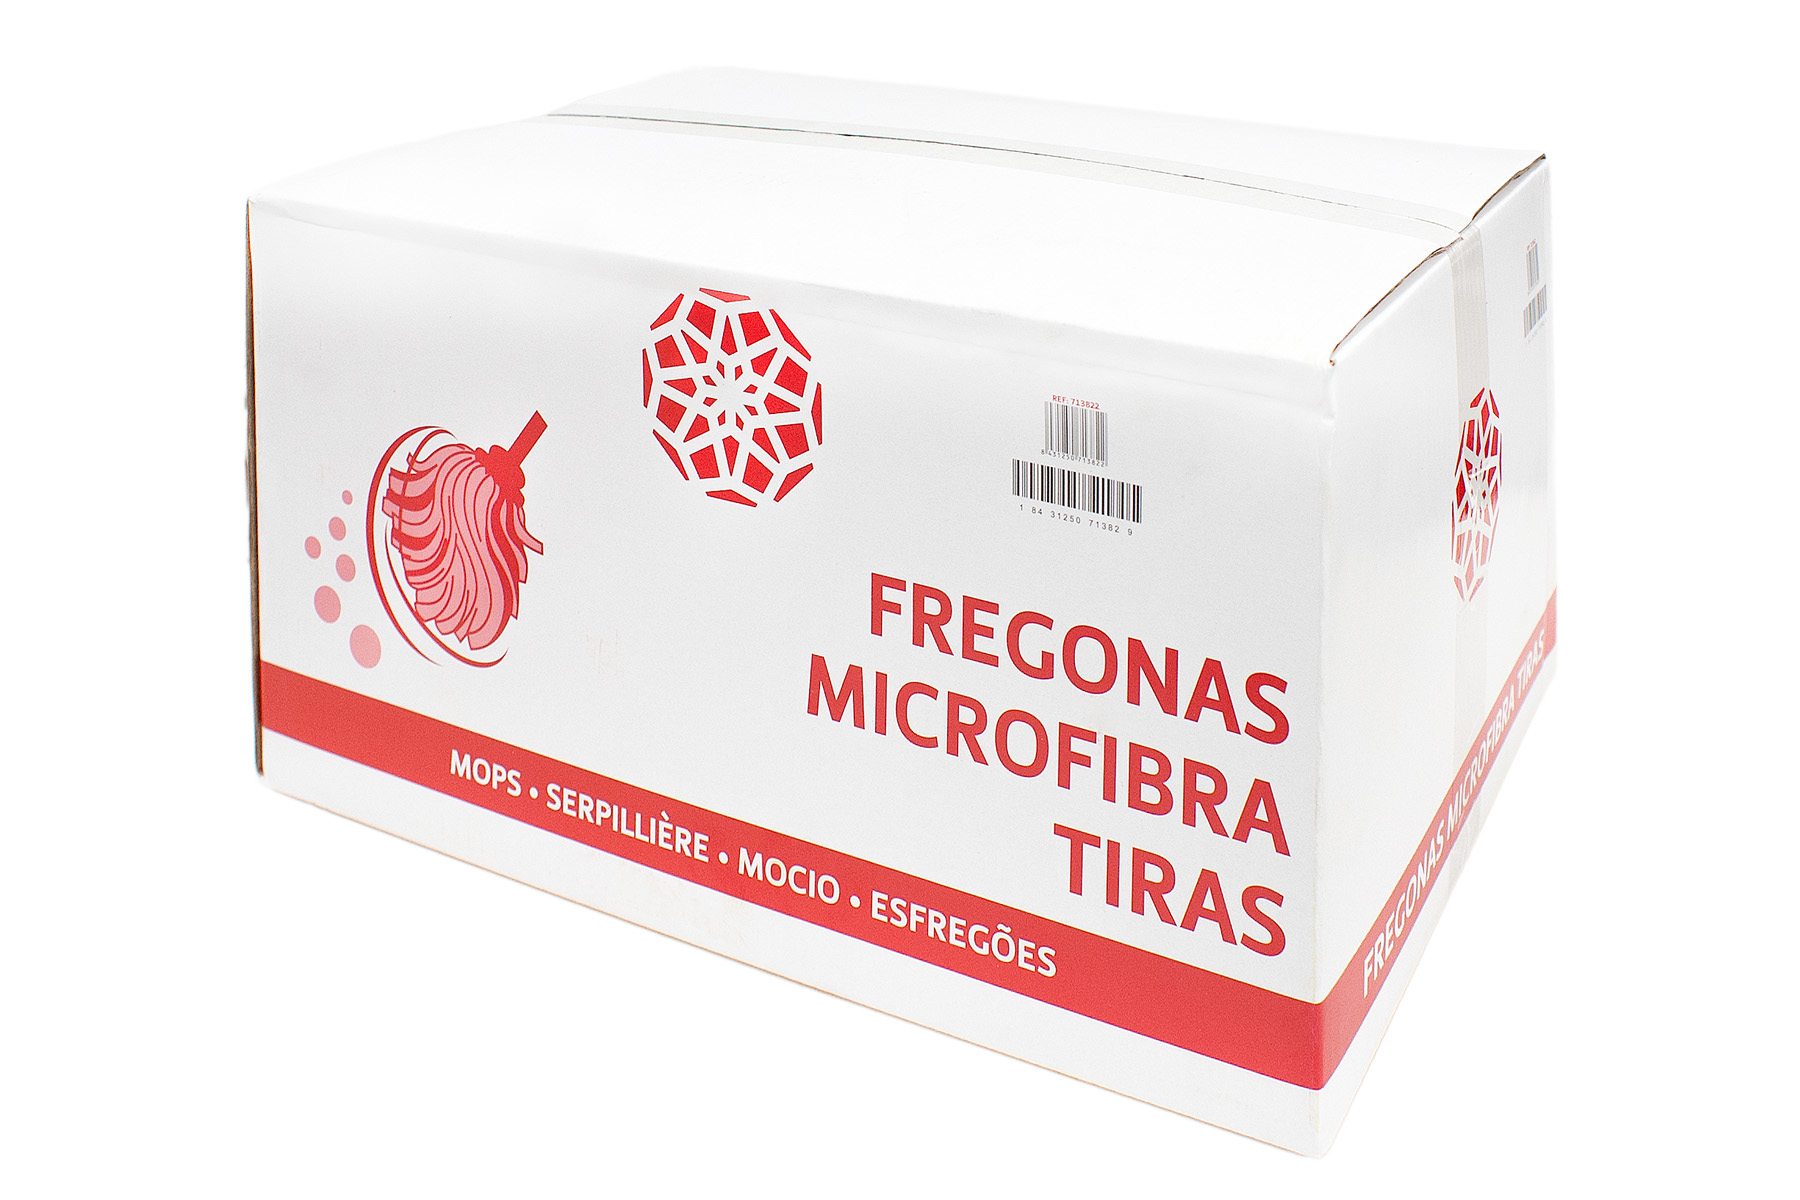 FREGONA MICROFIBRA TIRAS FUCSIA ANONIMA TECK